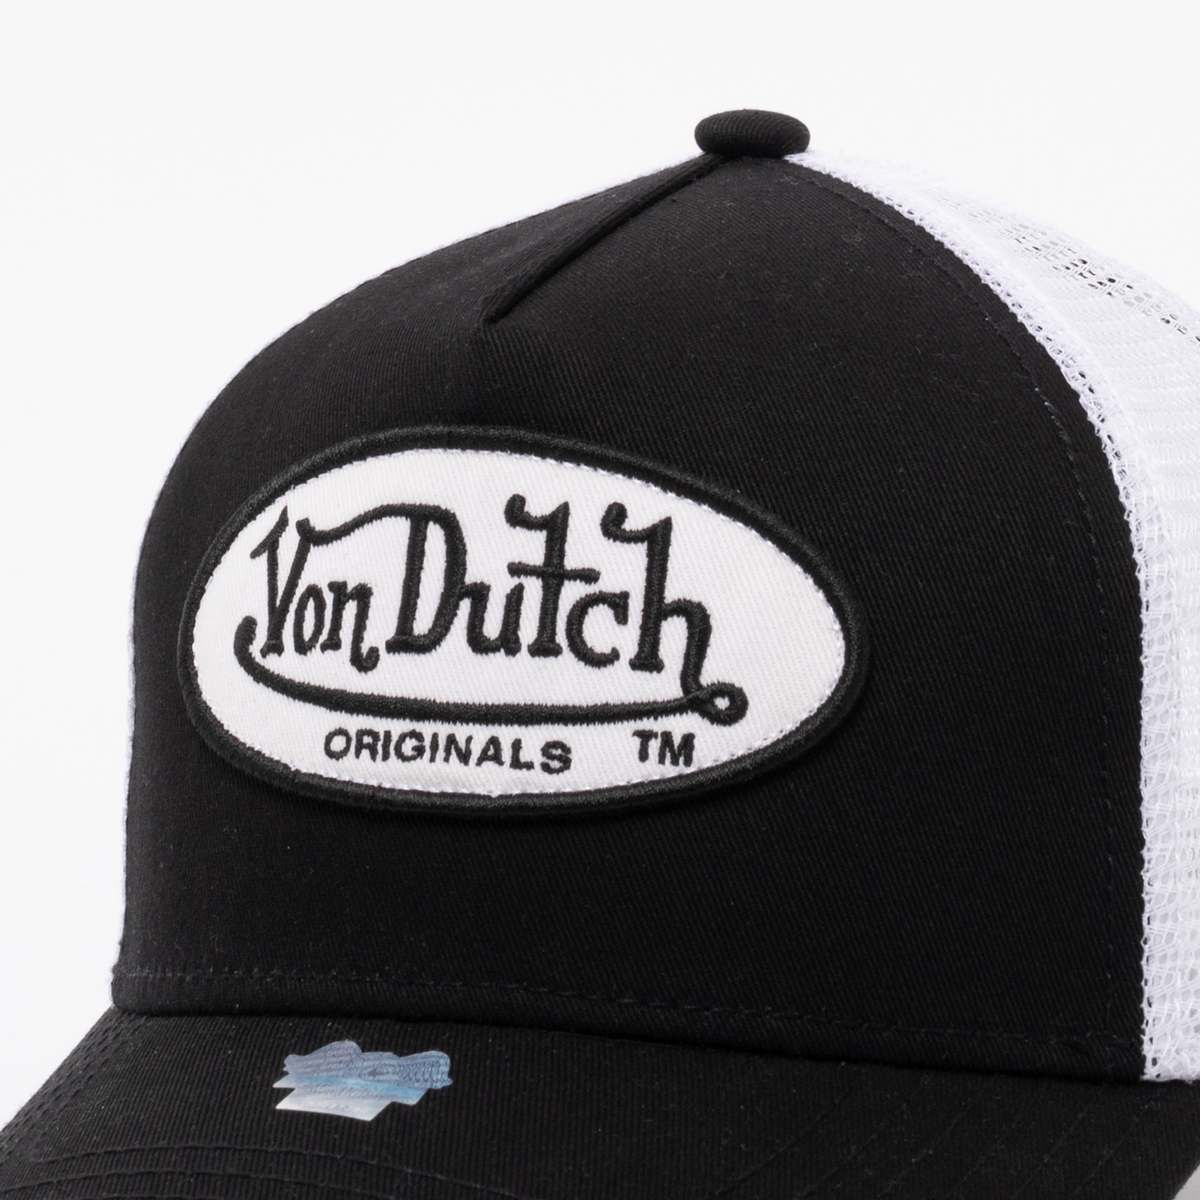 Von Dutch Boston Trucker Cap - Black/White - Headz Up 